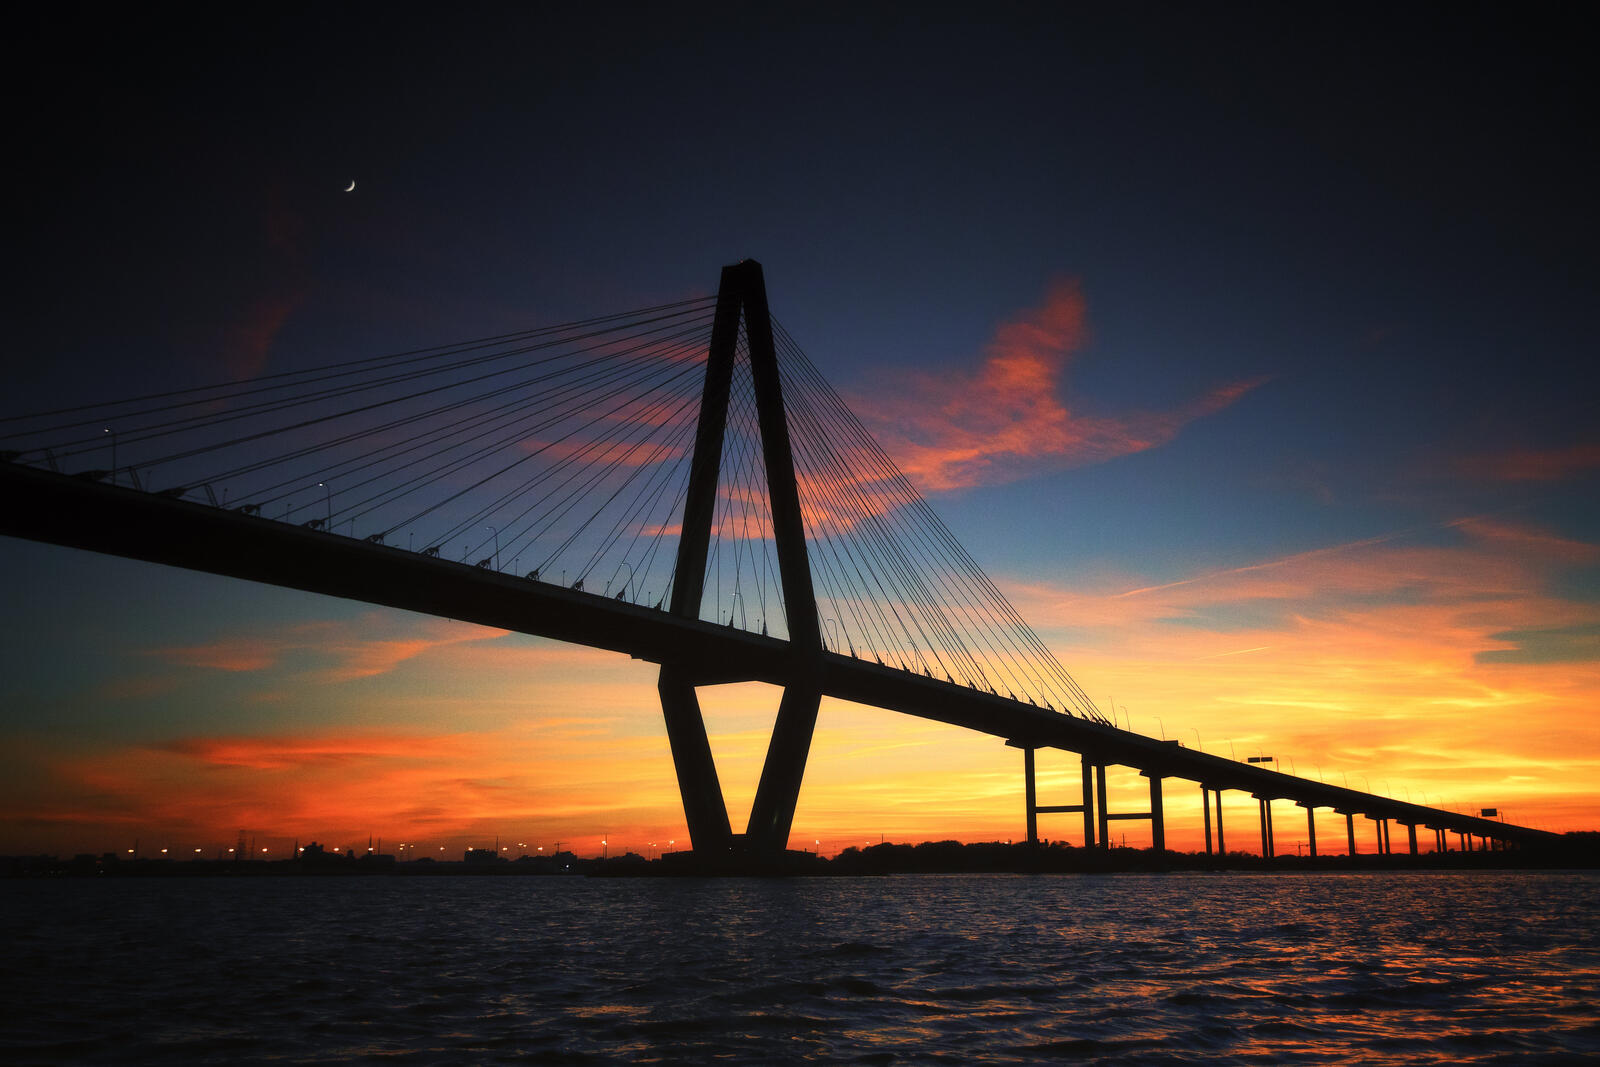 Бесплатное фото Картинка с большим автомобильным мостом на закате